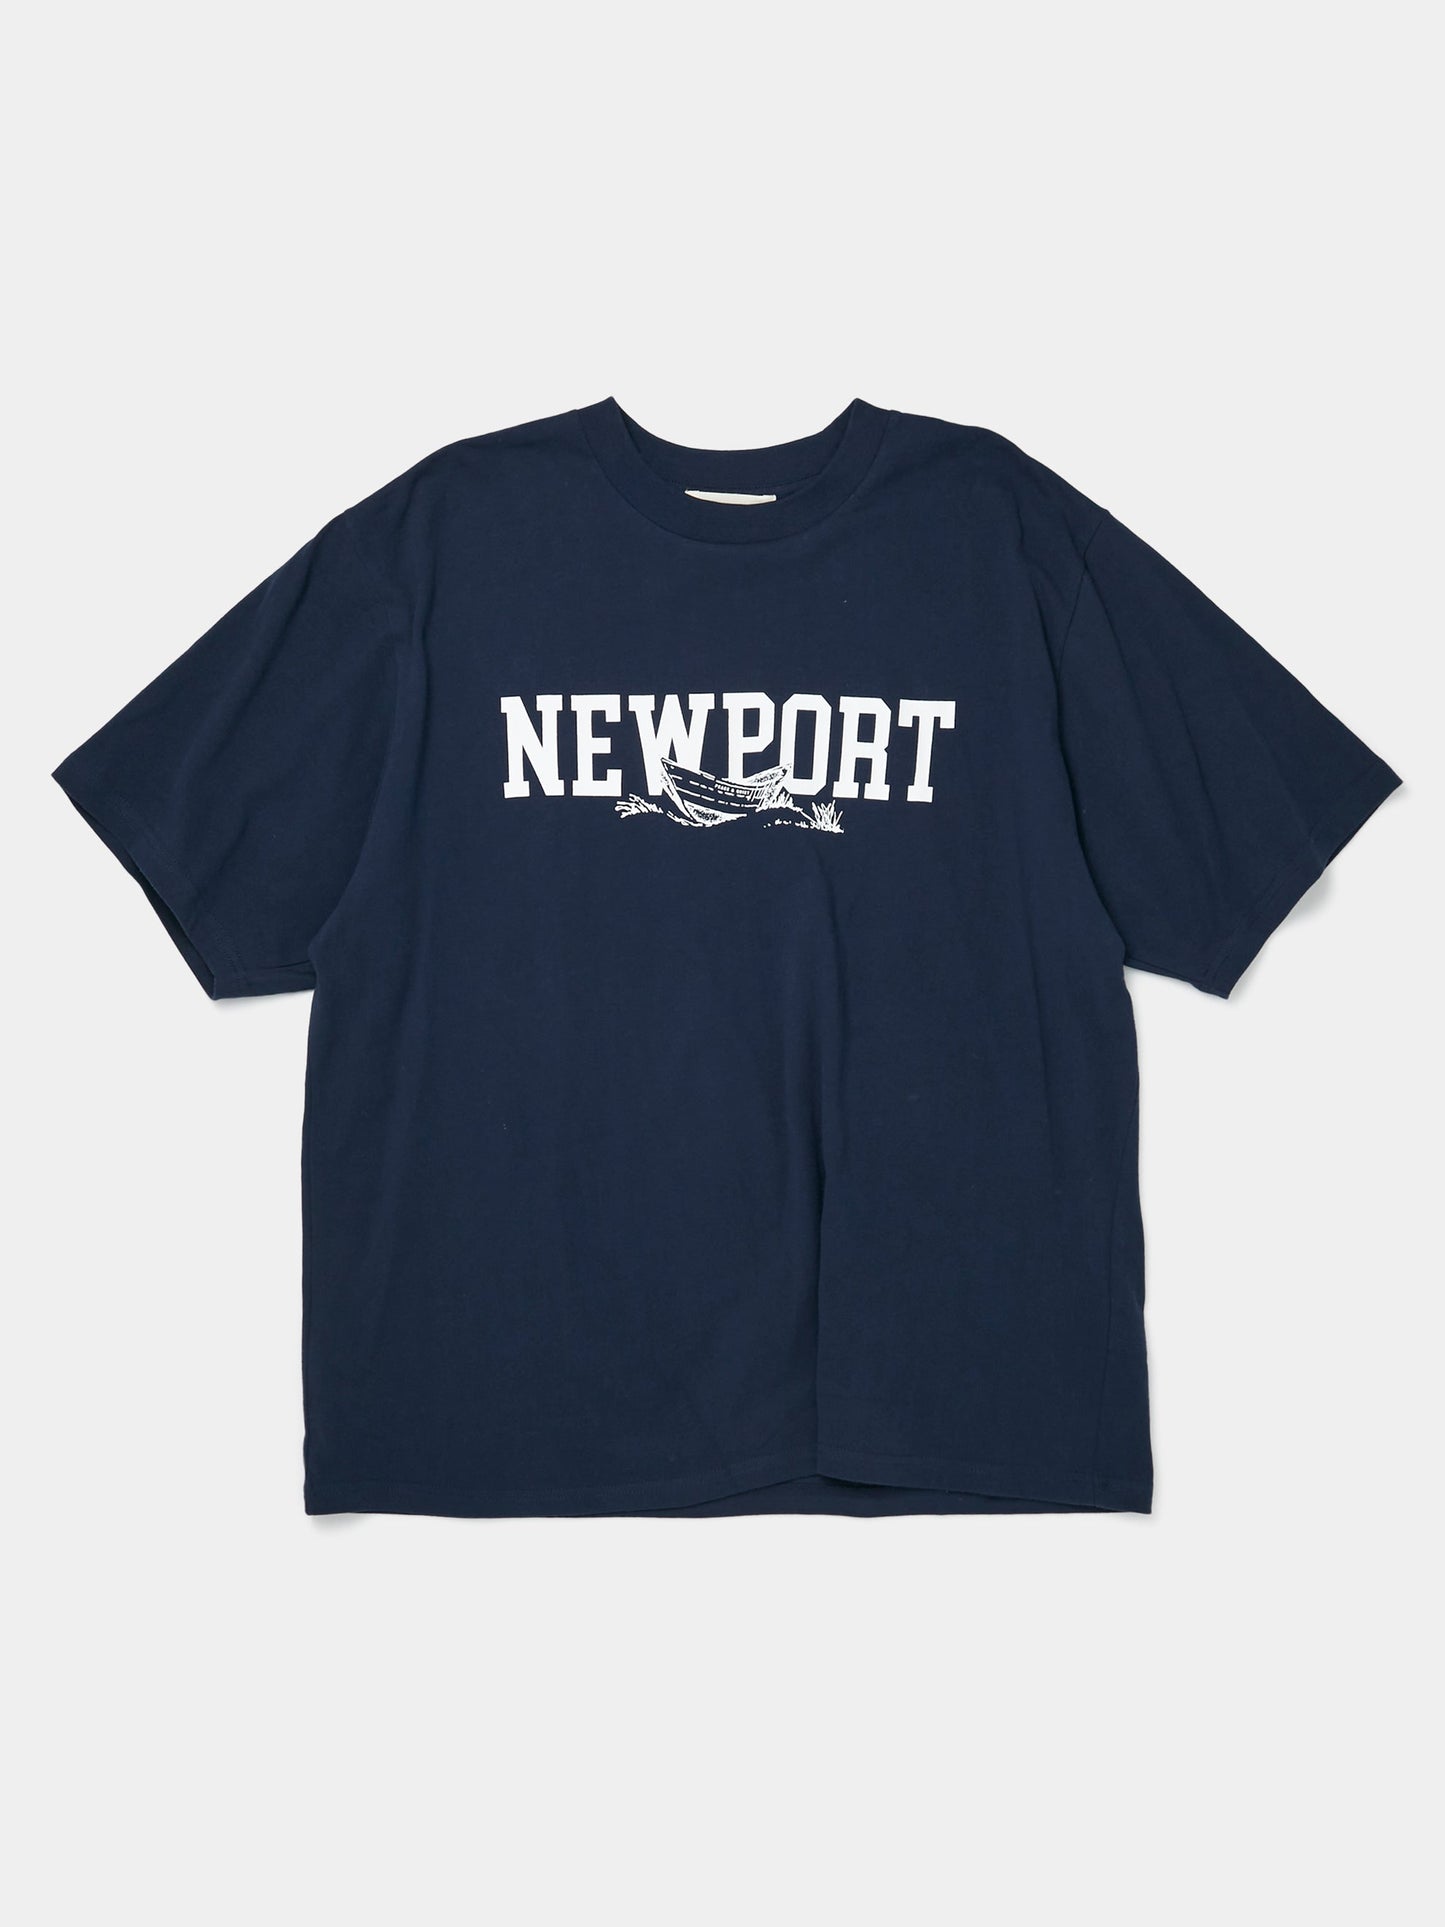 Newport T-Shirt (Navy)